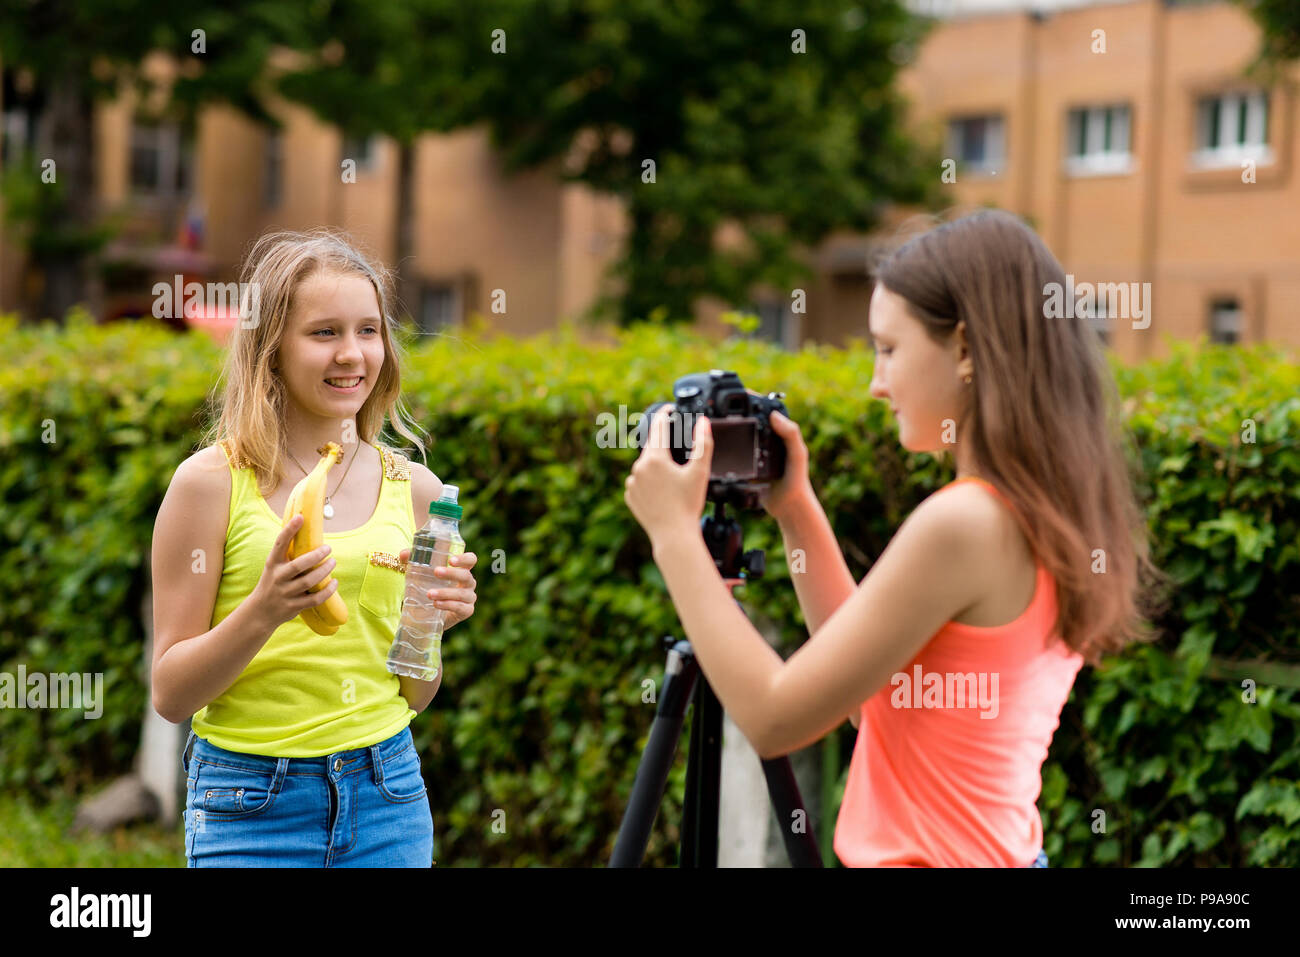 Zwei Mädchen Schulmädchen. Im Sommer in der Stadt. Schreibt das Video auf der Kamera. In den Händen hält, Bananen und eine Flasche Wasser. Das Konzept einer Video Blog über gesunde Ernährung. Stockfoto